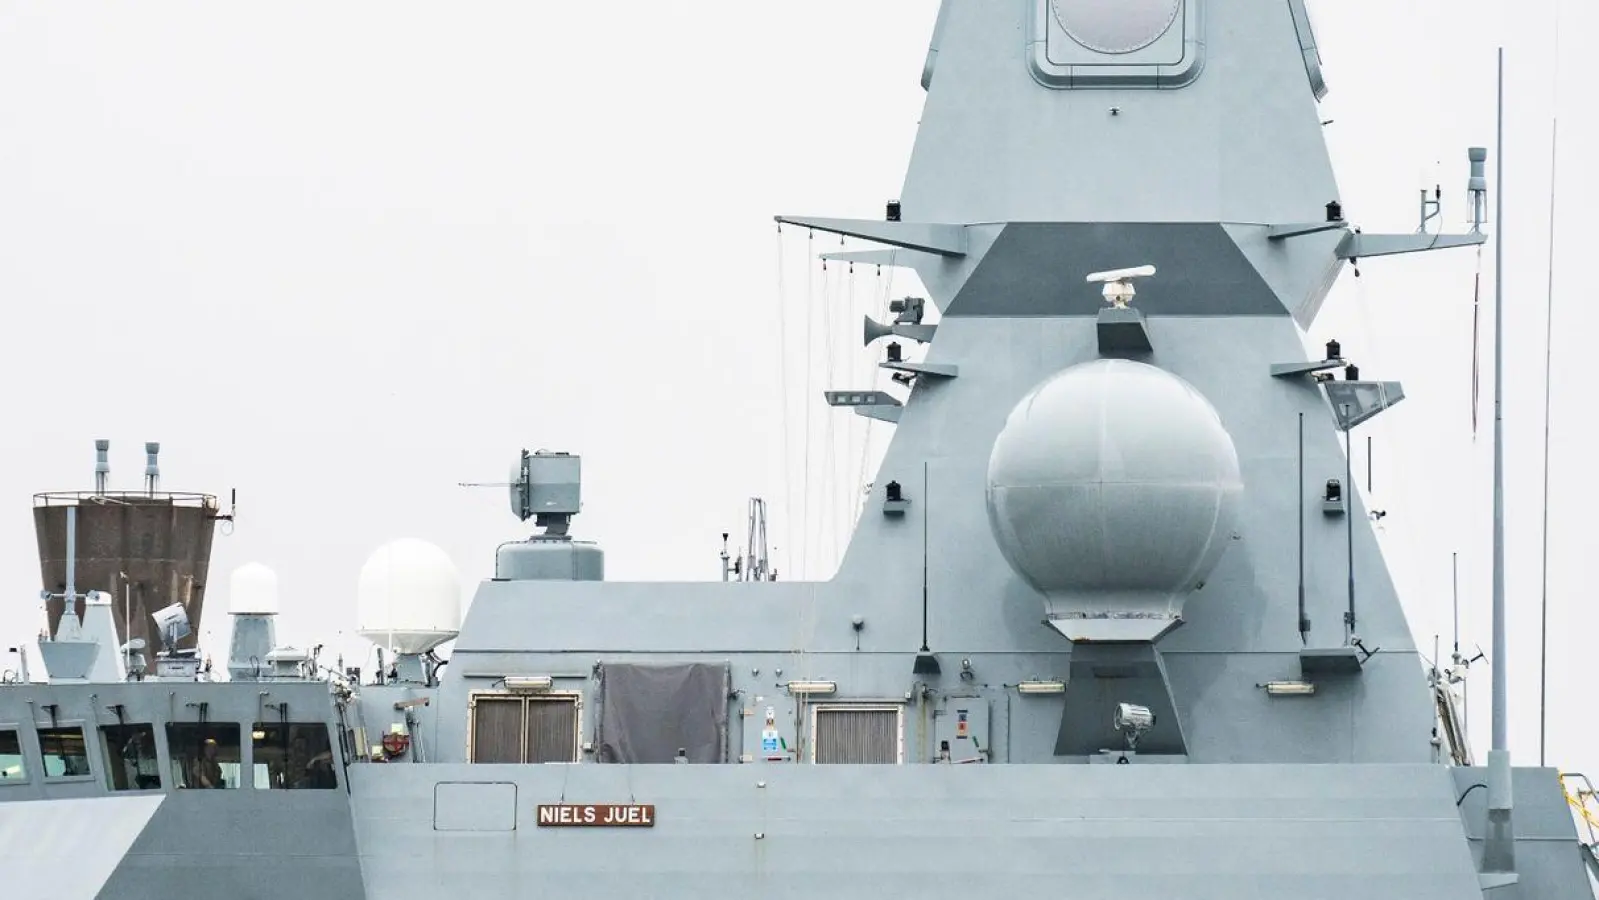 Eine Rakete auf einem Militärschiff in Dänemark hat zu Sperrungen im Luft- und Seeverkehr geführt. (Foto: Emil Nicolai Helms/Ritzau Scanpix Foto/AP/dpa)